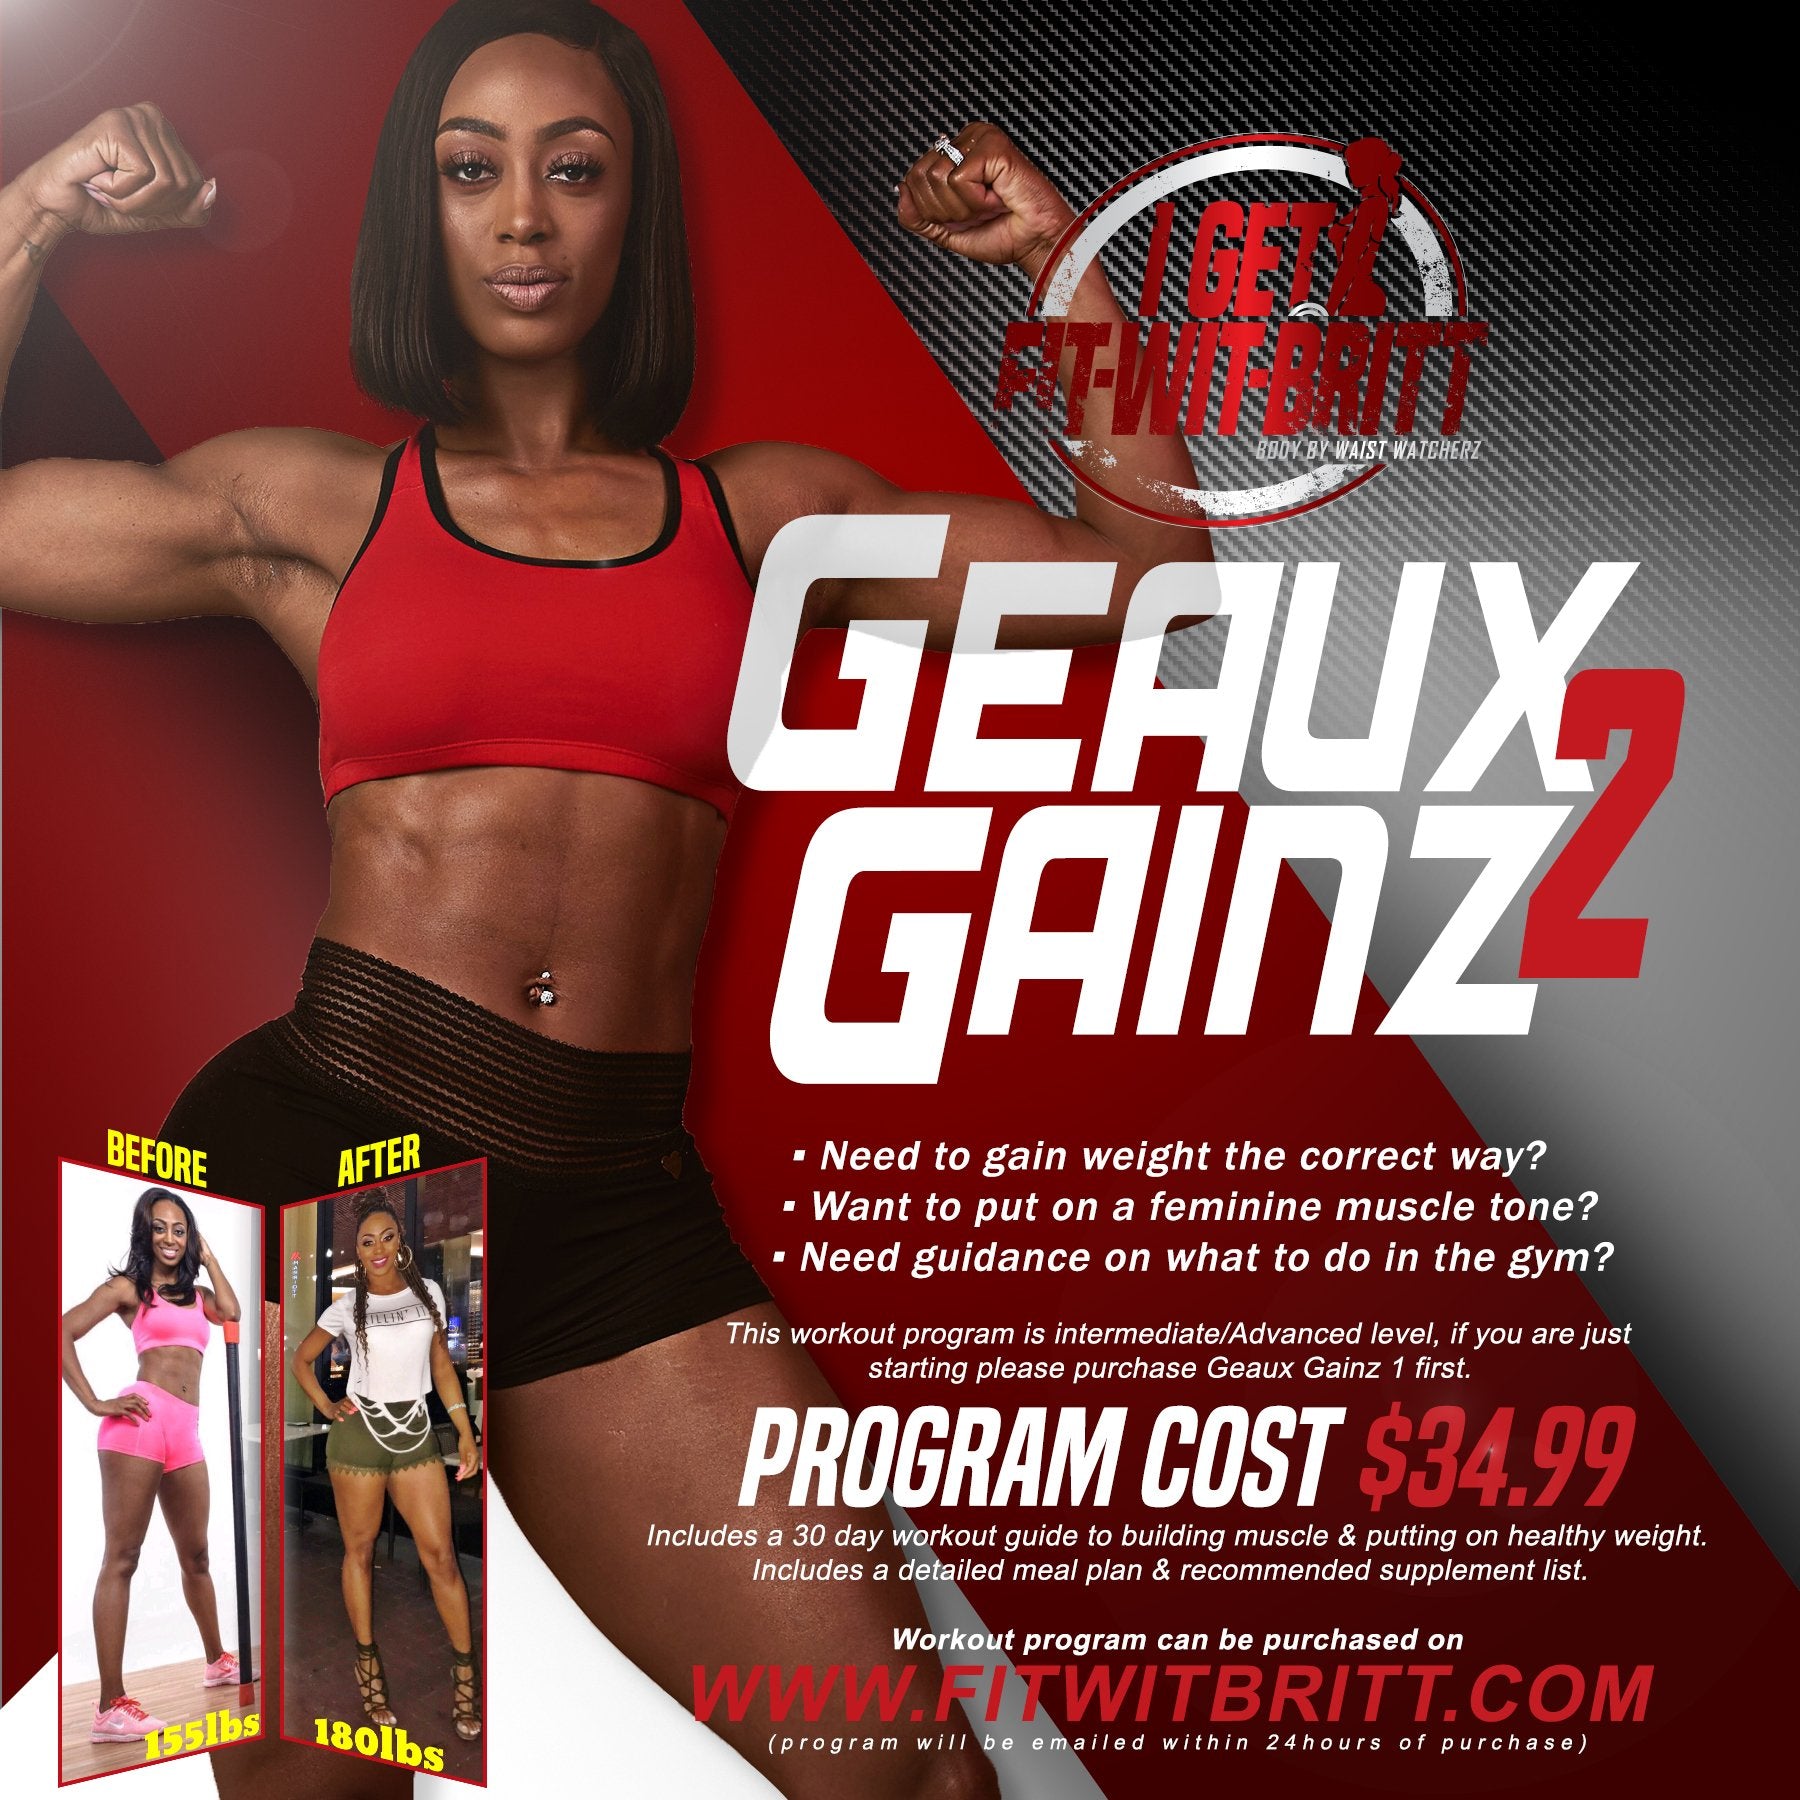 Geaux Gainz 2 - 30 day weight gain